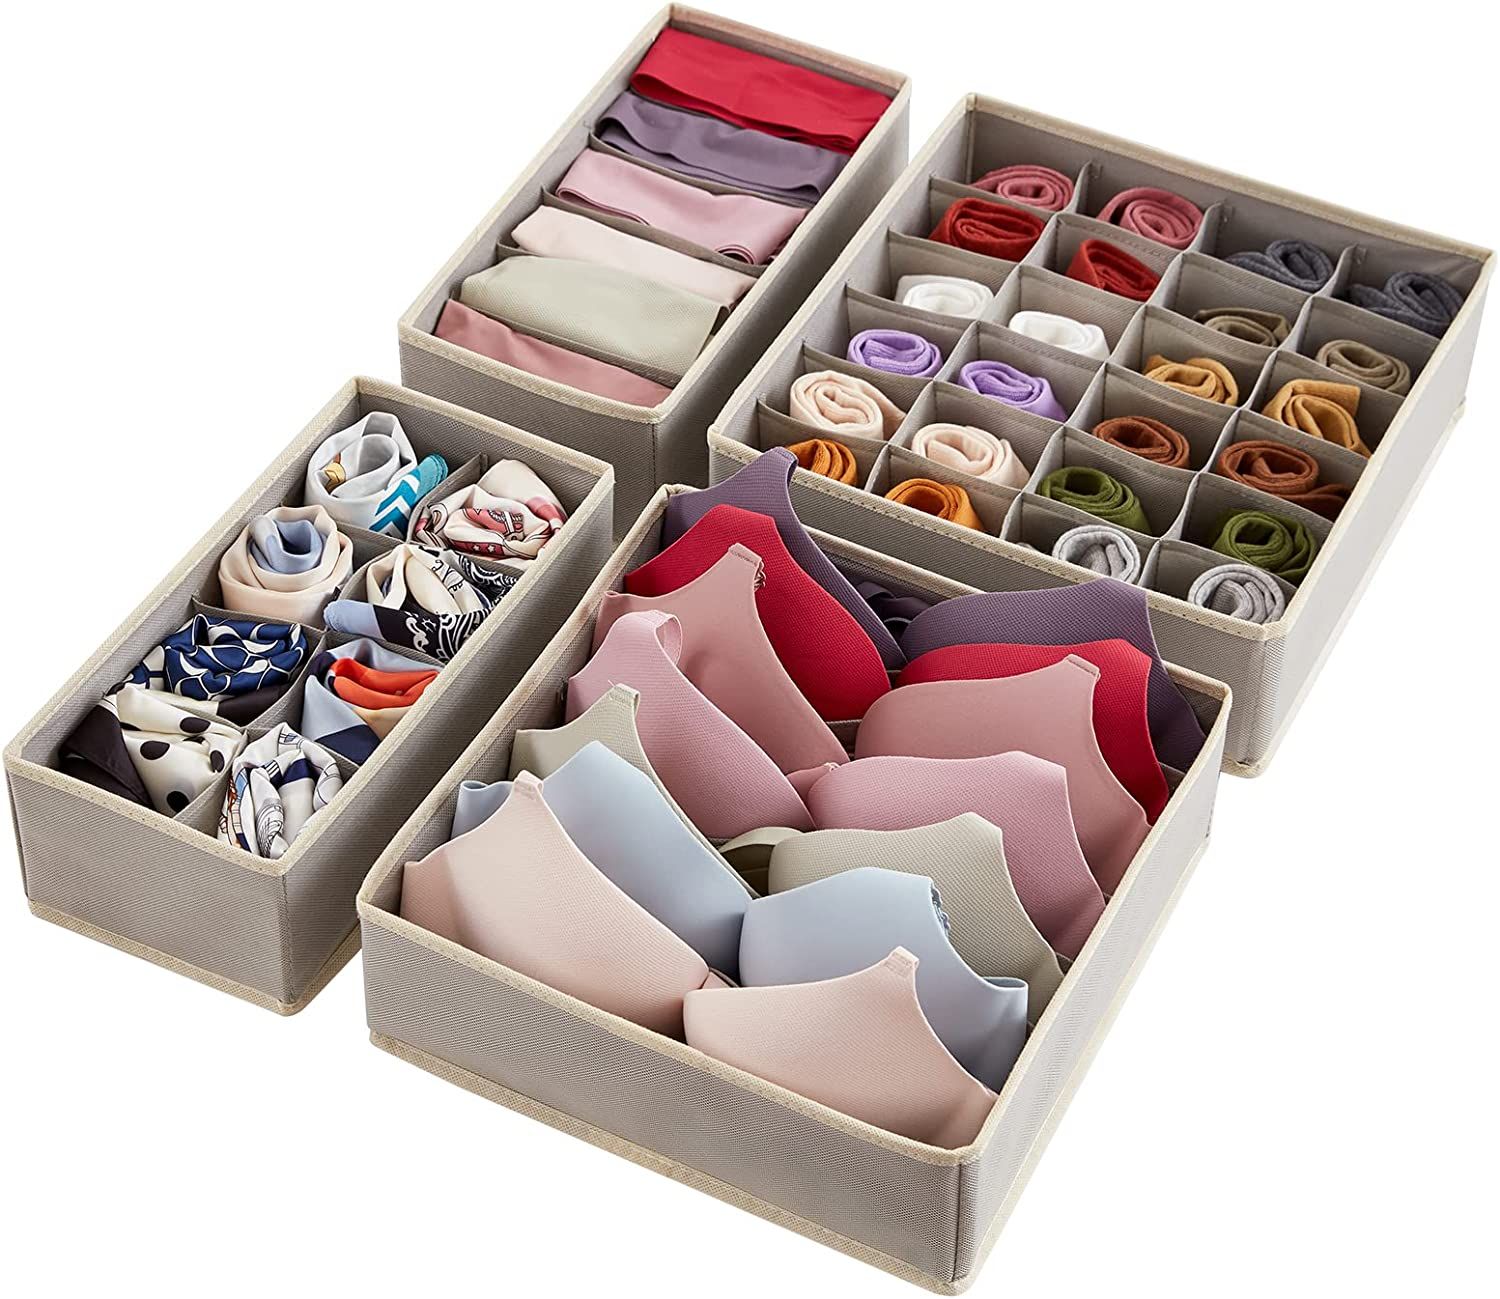 Lifewit Drawer Underwear Organizer Divider 4 Pieces Fabric Foldable Dresser Storage Basket Organi... | Amazon (US)